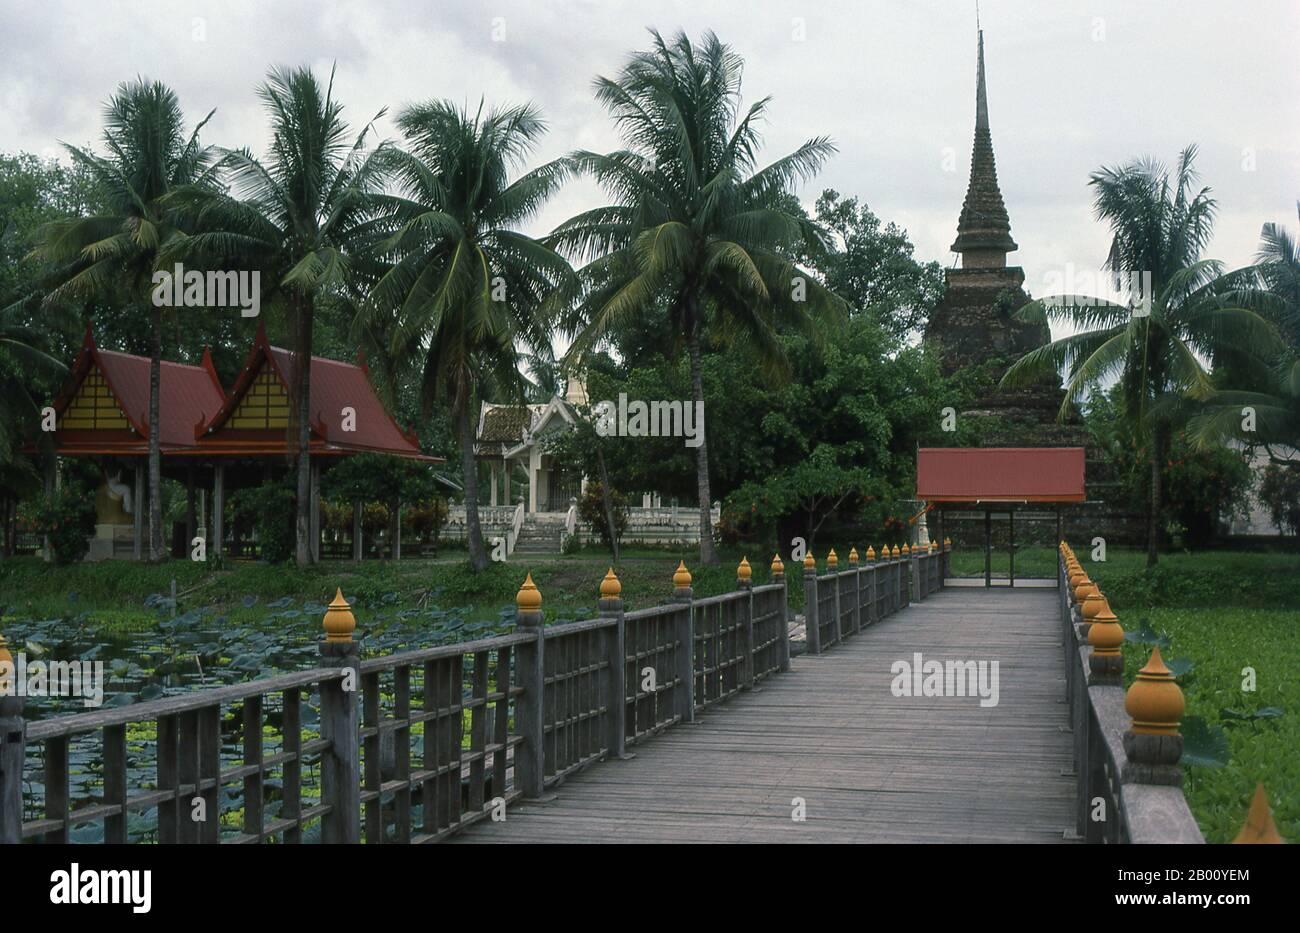 Thailand: Wat Trapang Thong Luang, Sukhothai Historischer Park. Sukhothai, was wörtlich "Dawn of Happiness" bedeutet, war die Hauptstadt des Sukhothai-Königreichs und wurde 1238 gegründet. Es war die Hauptstadt des thailändischen Reiches für etwa 140 Jahre. Stockfoto